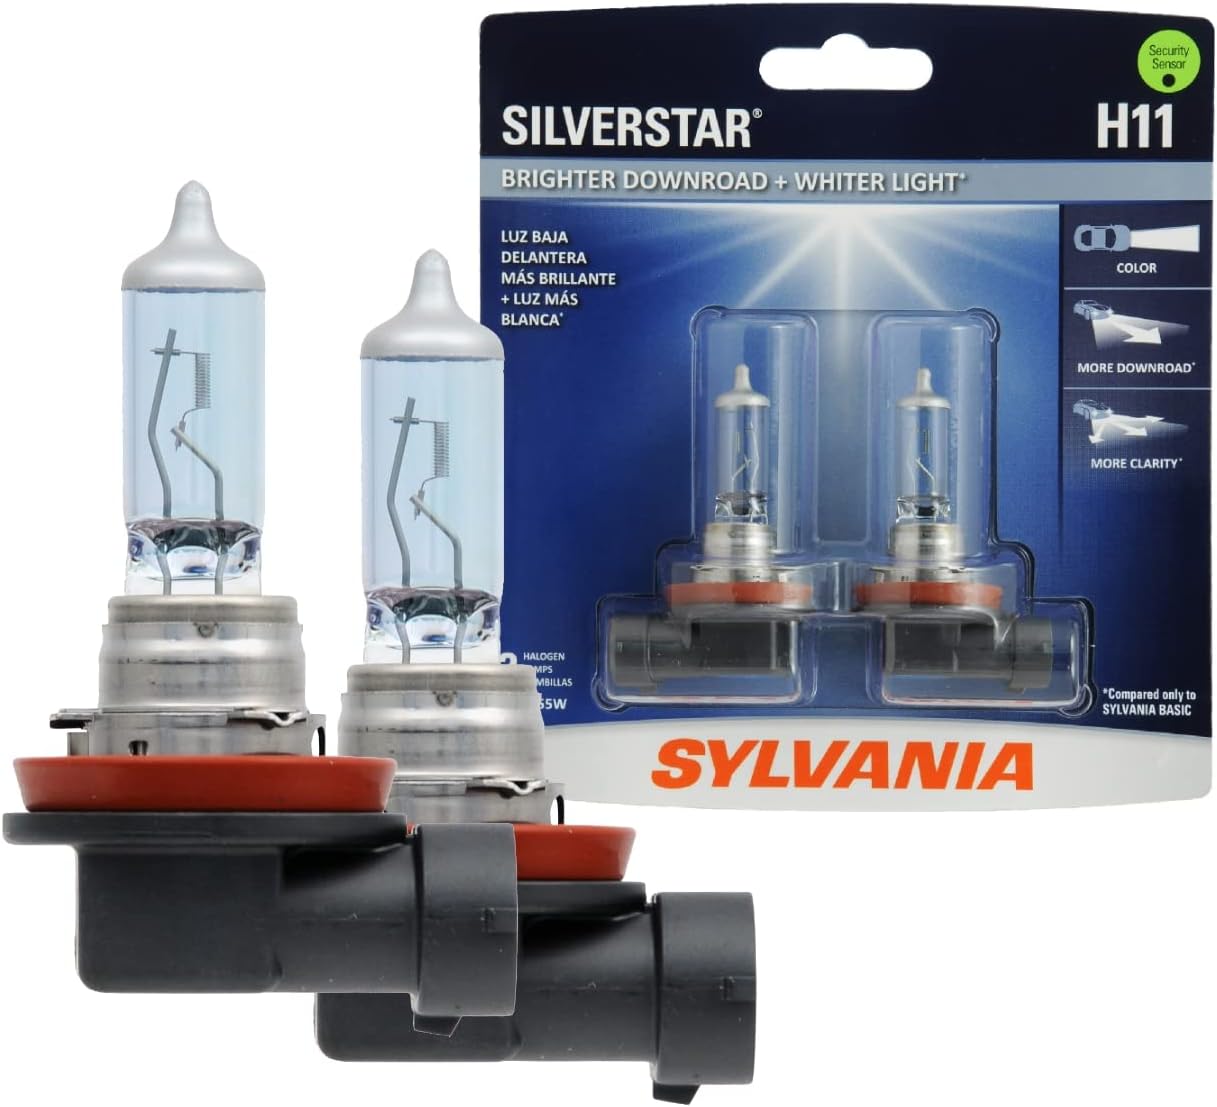 SYLVANIA H11 SilverStar High Performance Halogen Headlight Bulb, (Contains 2 Bulbs)